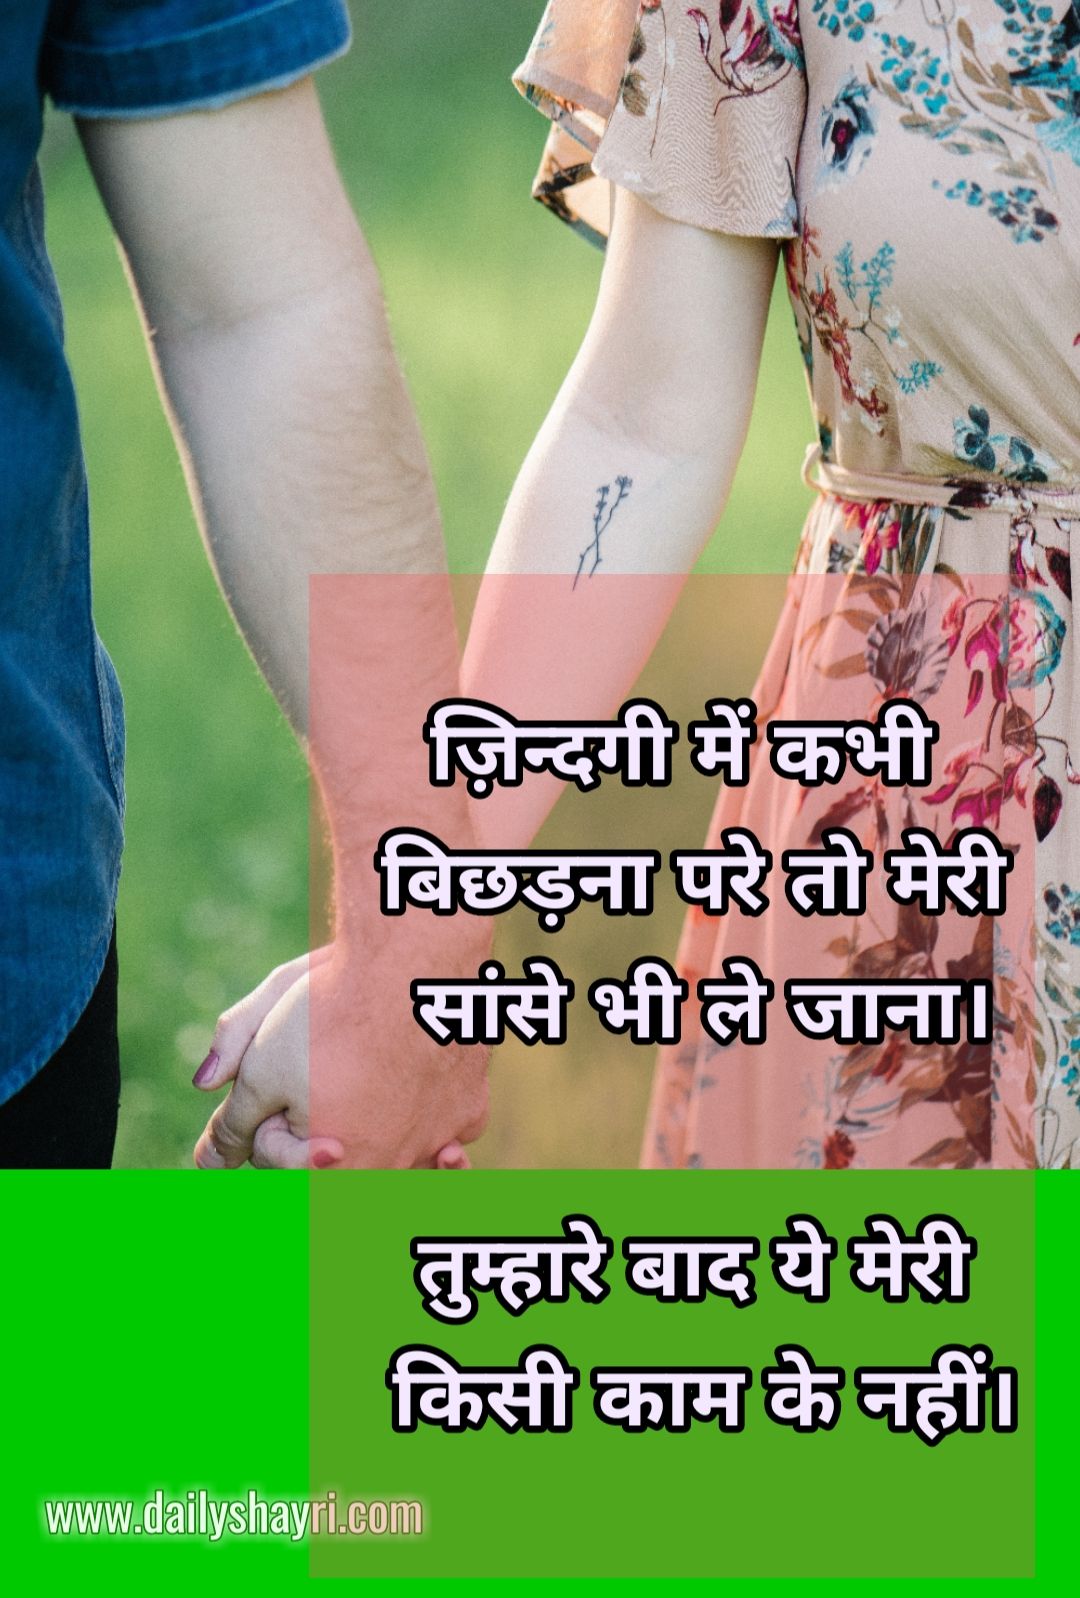 Sad Hindi Shayari Images Hd - Hindi Shayari Love Shayari Love Quotes Hd Images